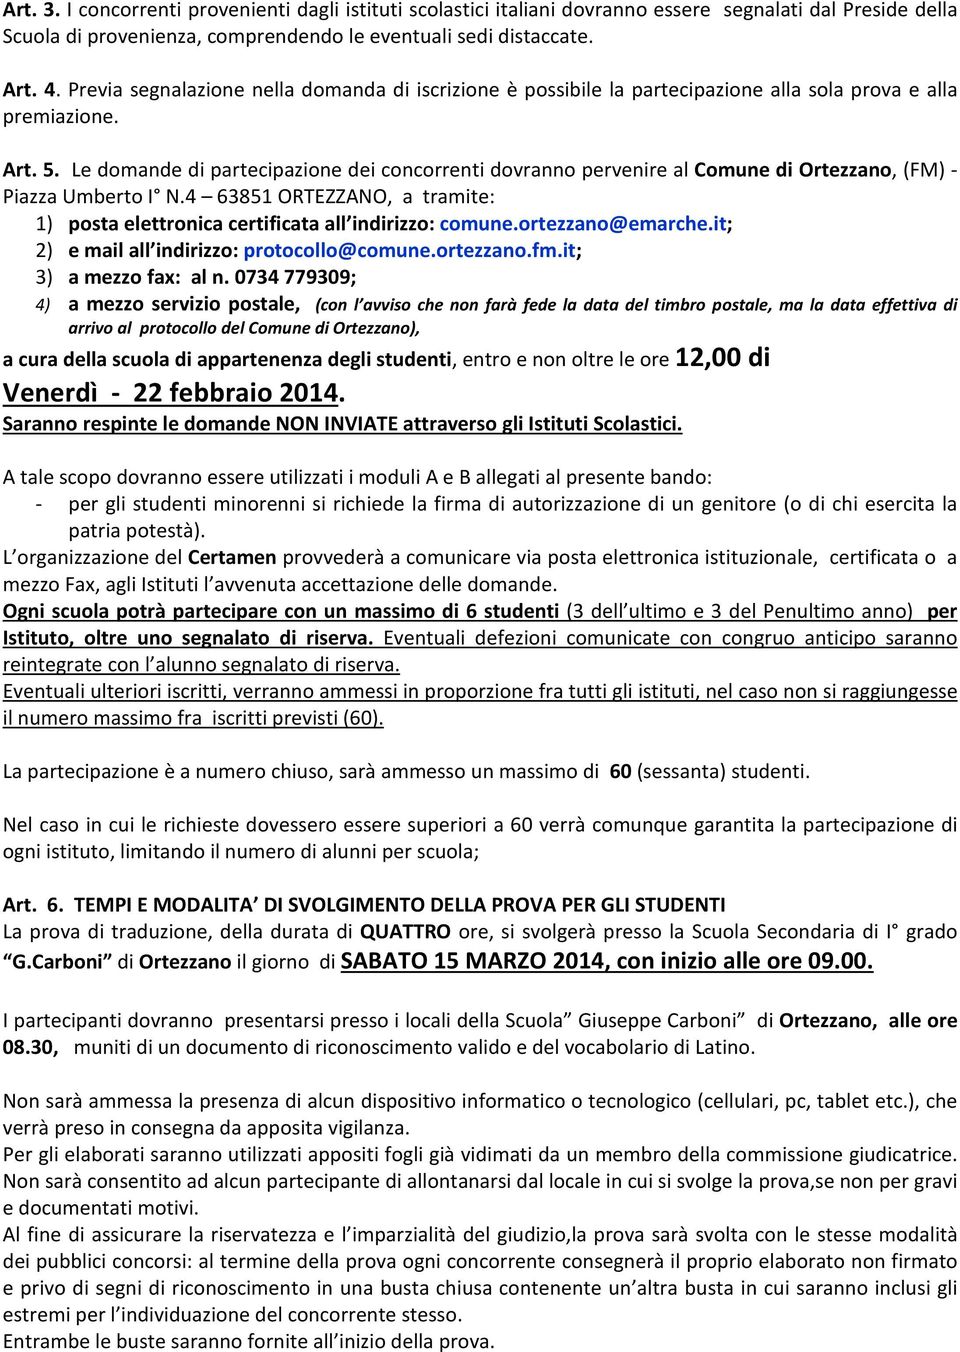 Le domande di partecipazione dei concorrenti dovranno pervenire al Comune di Ortezzano, (FM) - Piazza Umberto I N.4 63851 ORTEZZANO, a tramite: 1) posta elettronica certificata all indirizzo: comune.